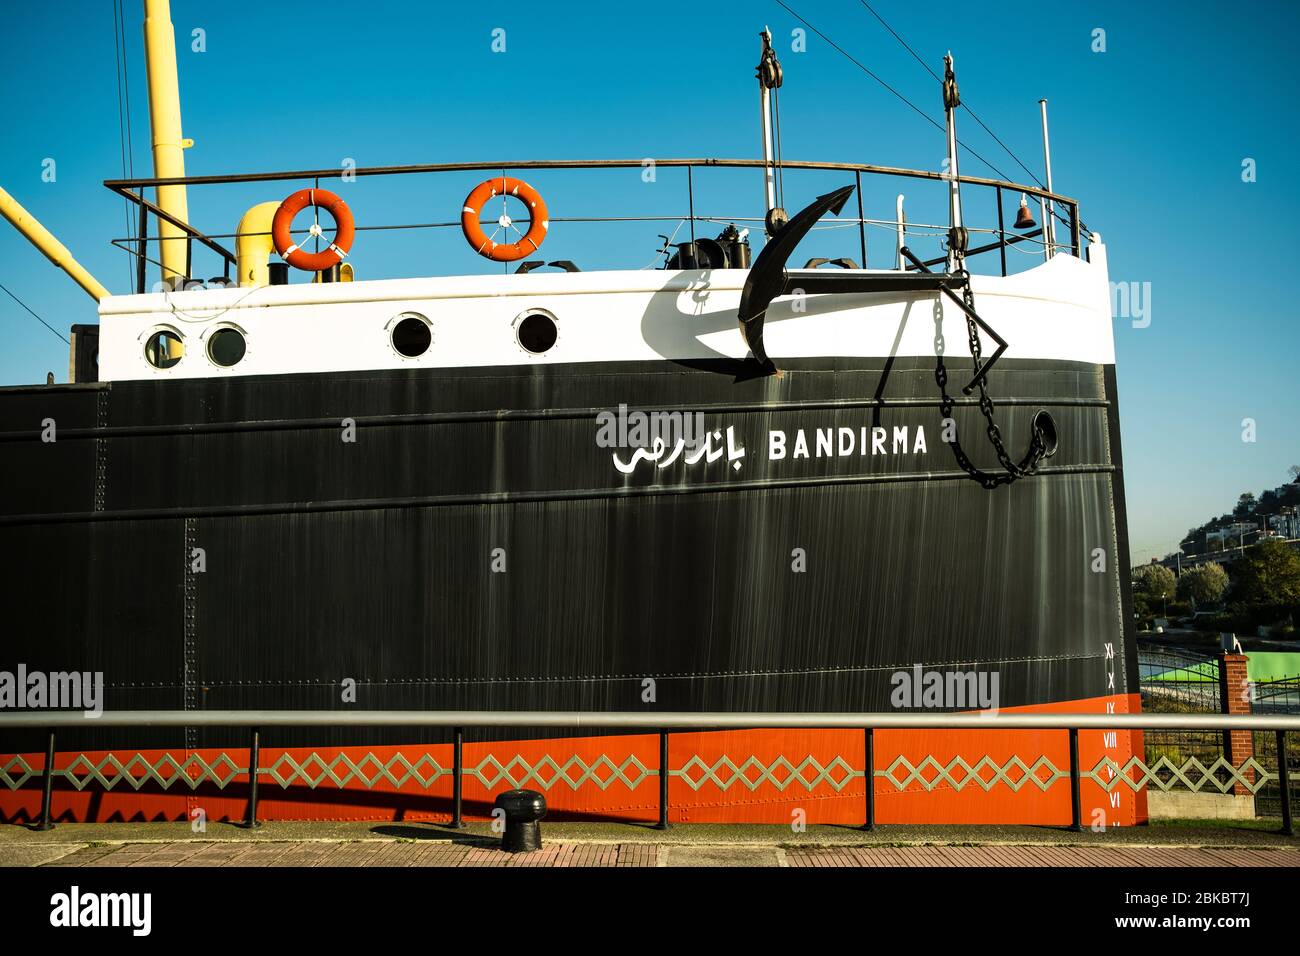 Bandırma vaporetto, Samsun / Turchia - Novembre 2019: Bandirma traghetto è uno dei più importanti simboli storici di Samsun, Turchia. Foto Stock